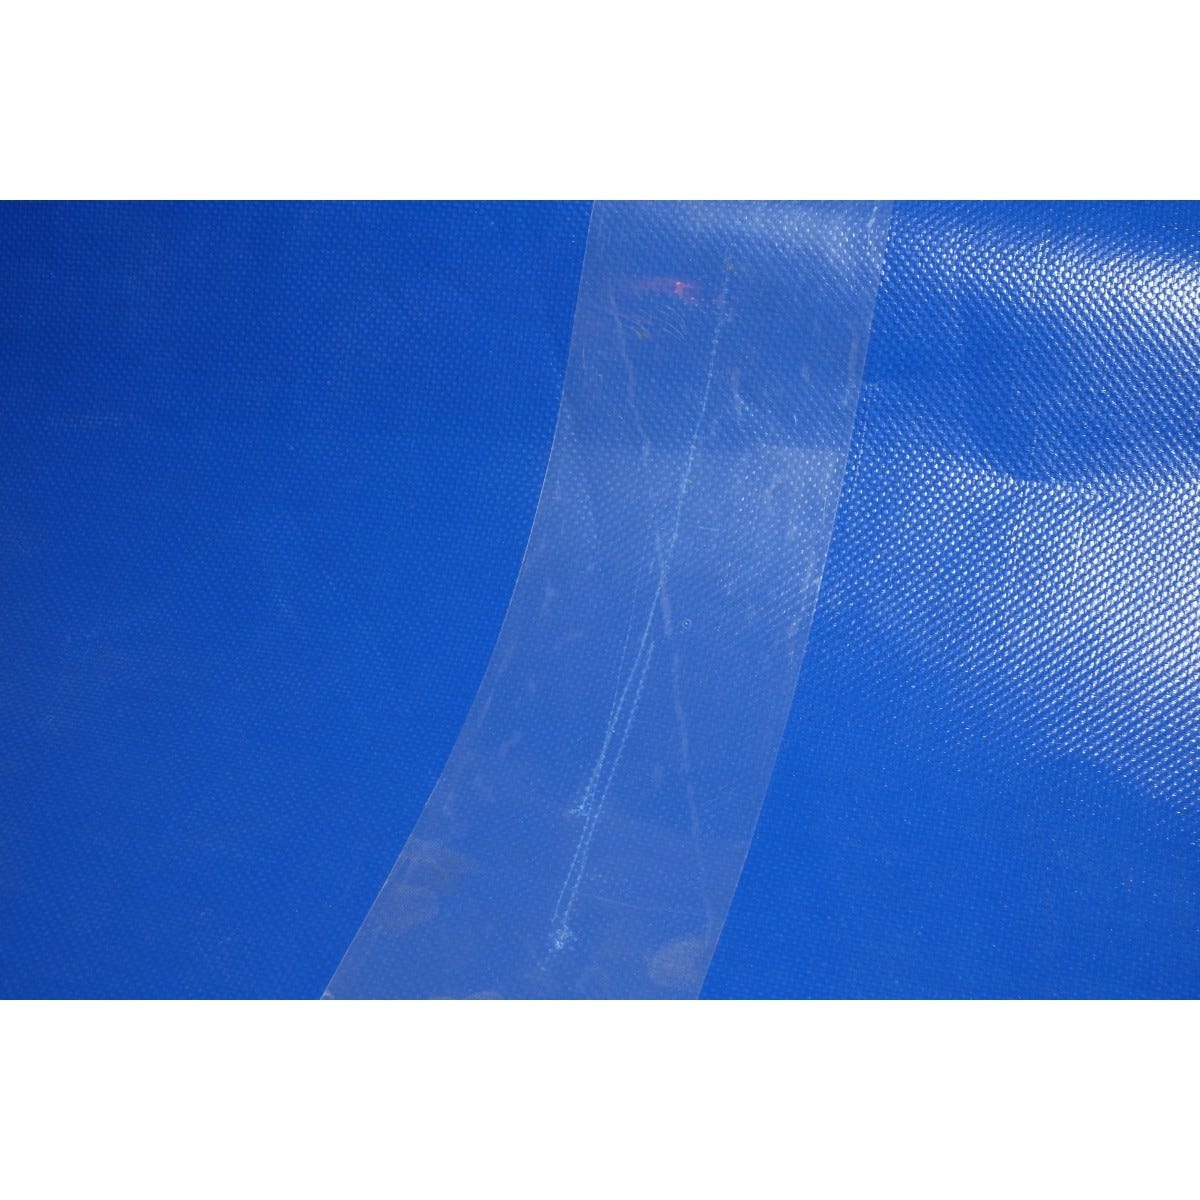 Adhésif de réparation bâches 100mm x 20m - Qualité PRO TECPLAST ADHREP - Pour tout type de bâches dont bâches serre et toiles PVC 3